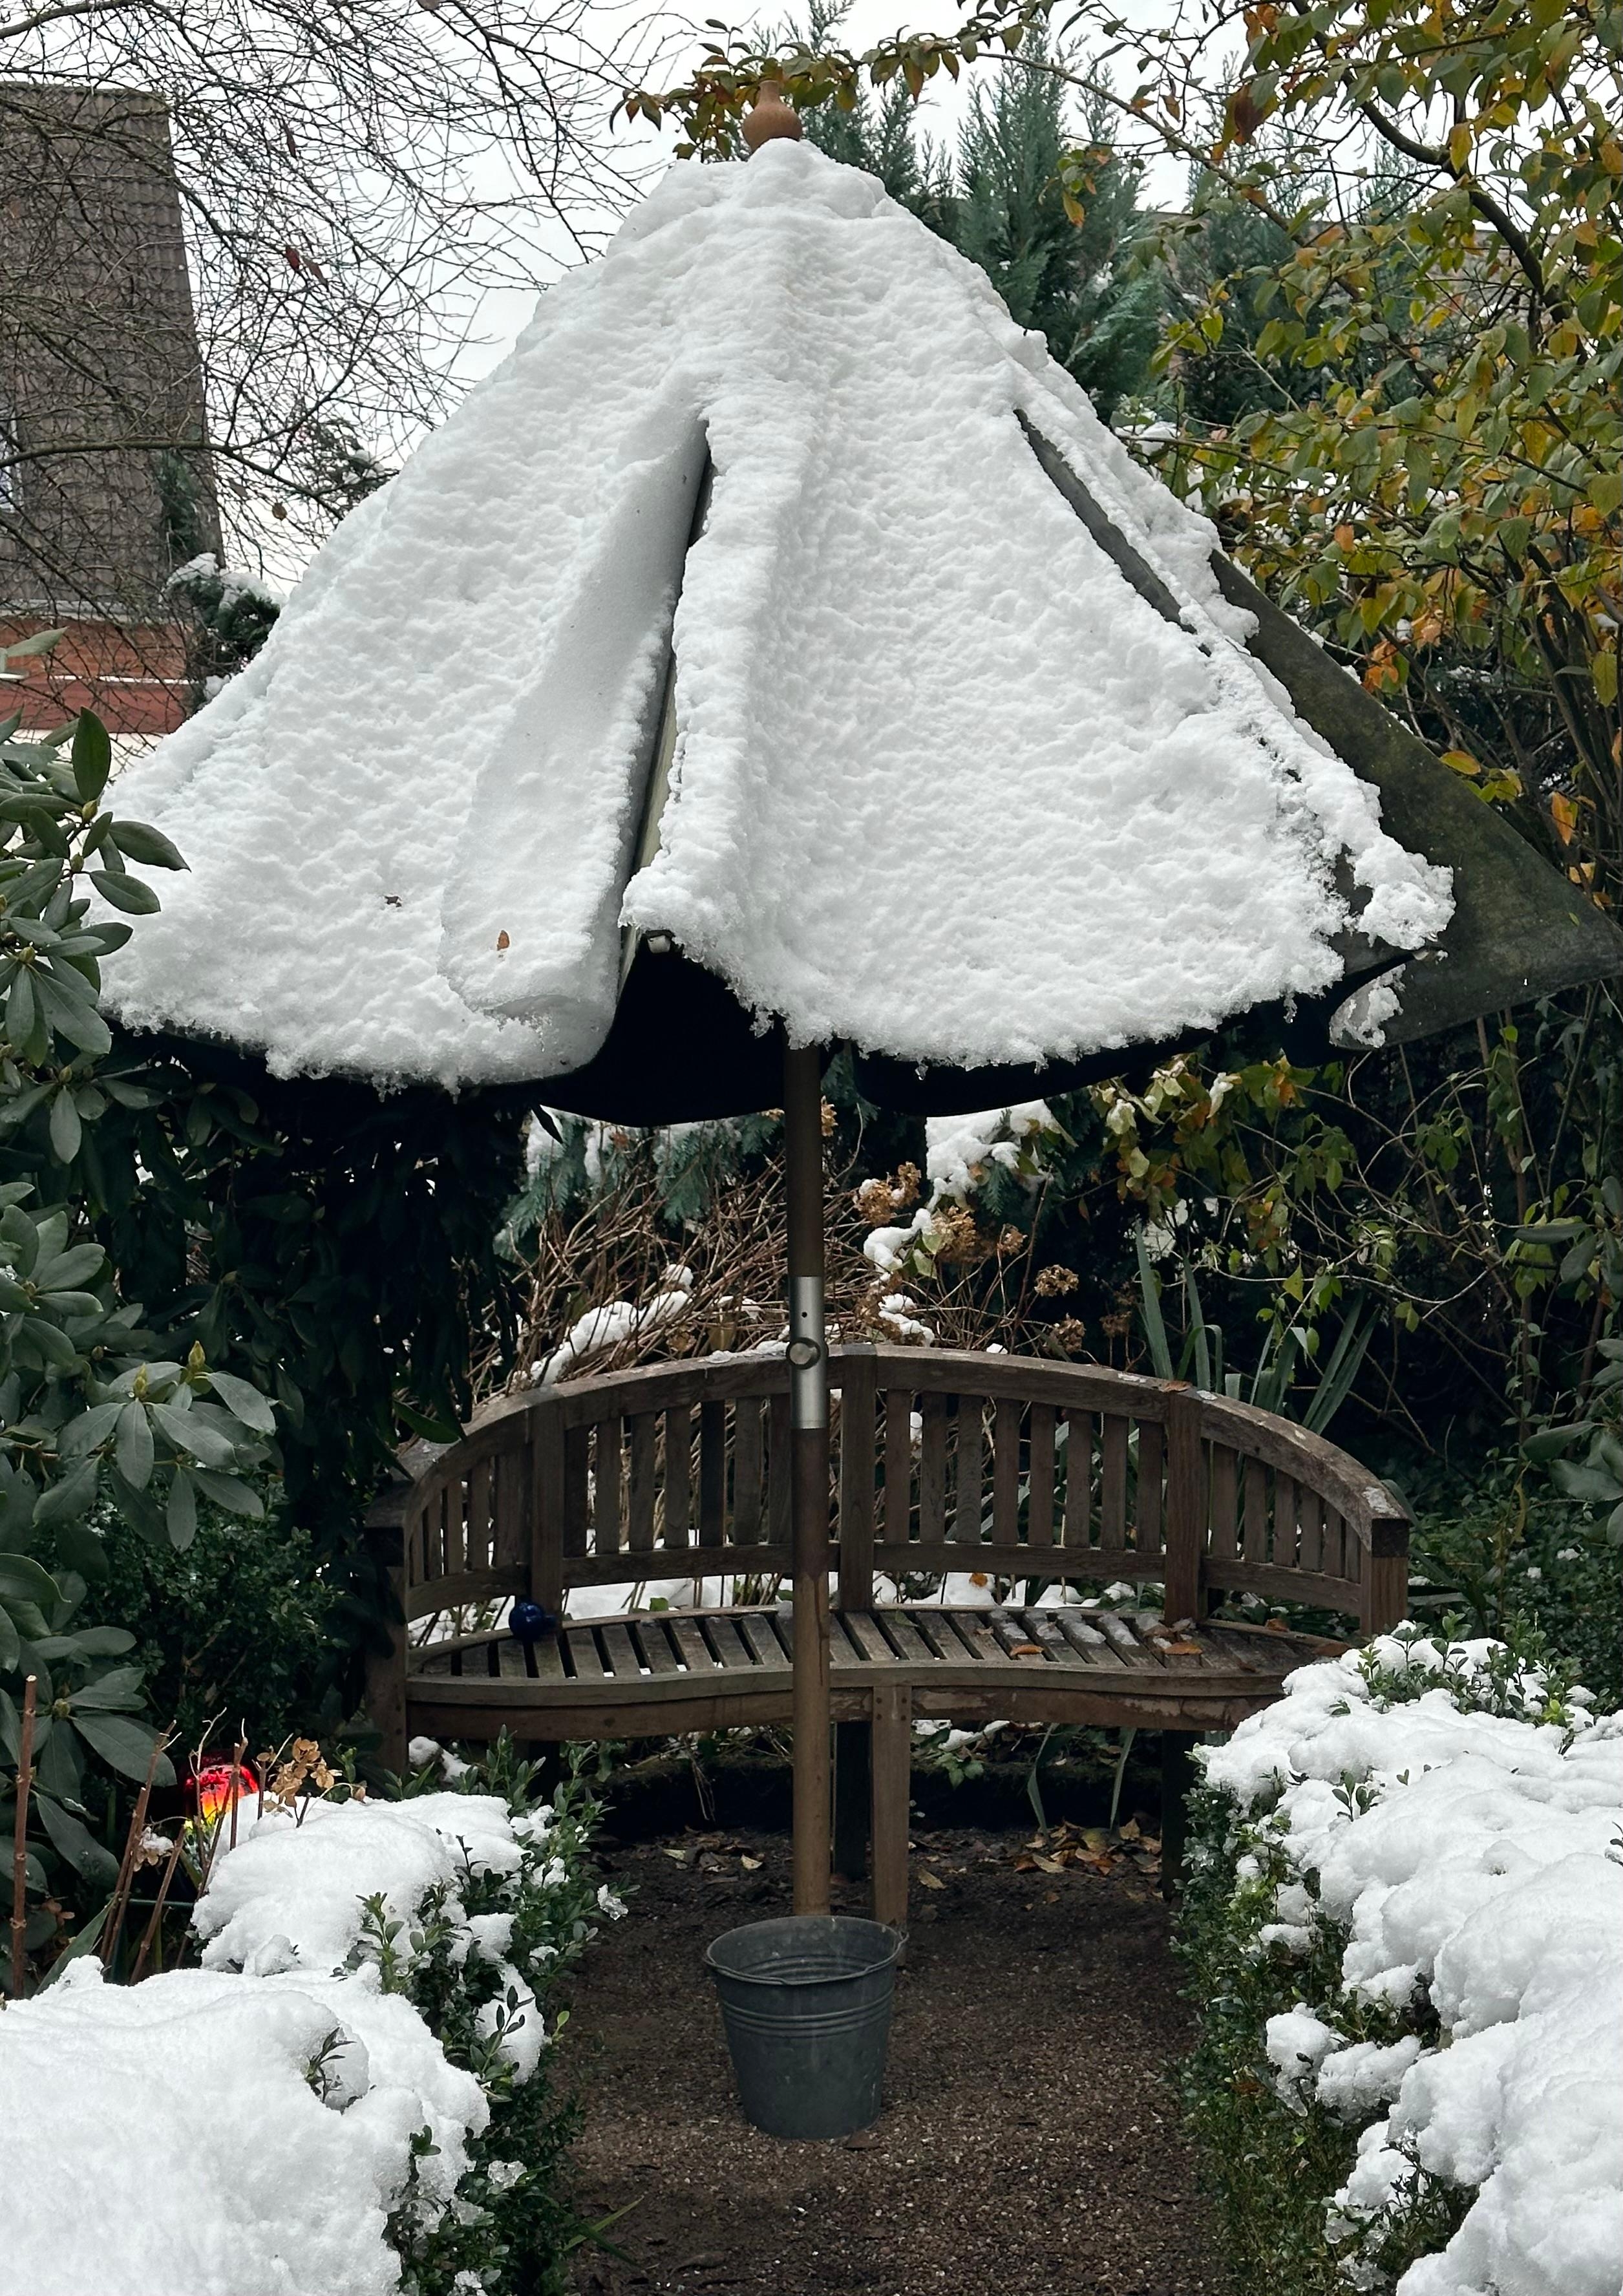 So sieht es aus wenn Man(n) den alten Sonnenschirm nicht reinholt 😩
#Winter #Schnee #Garten